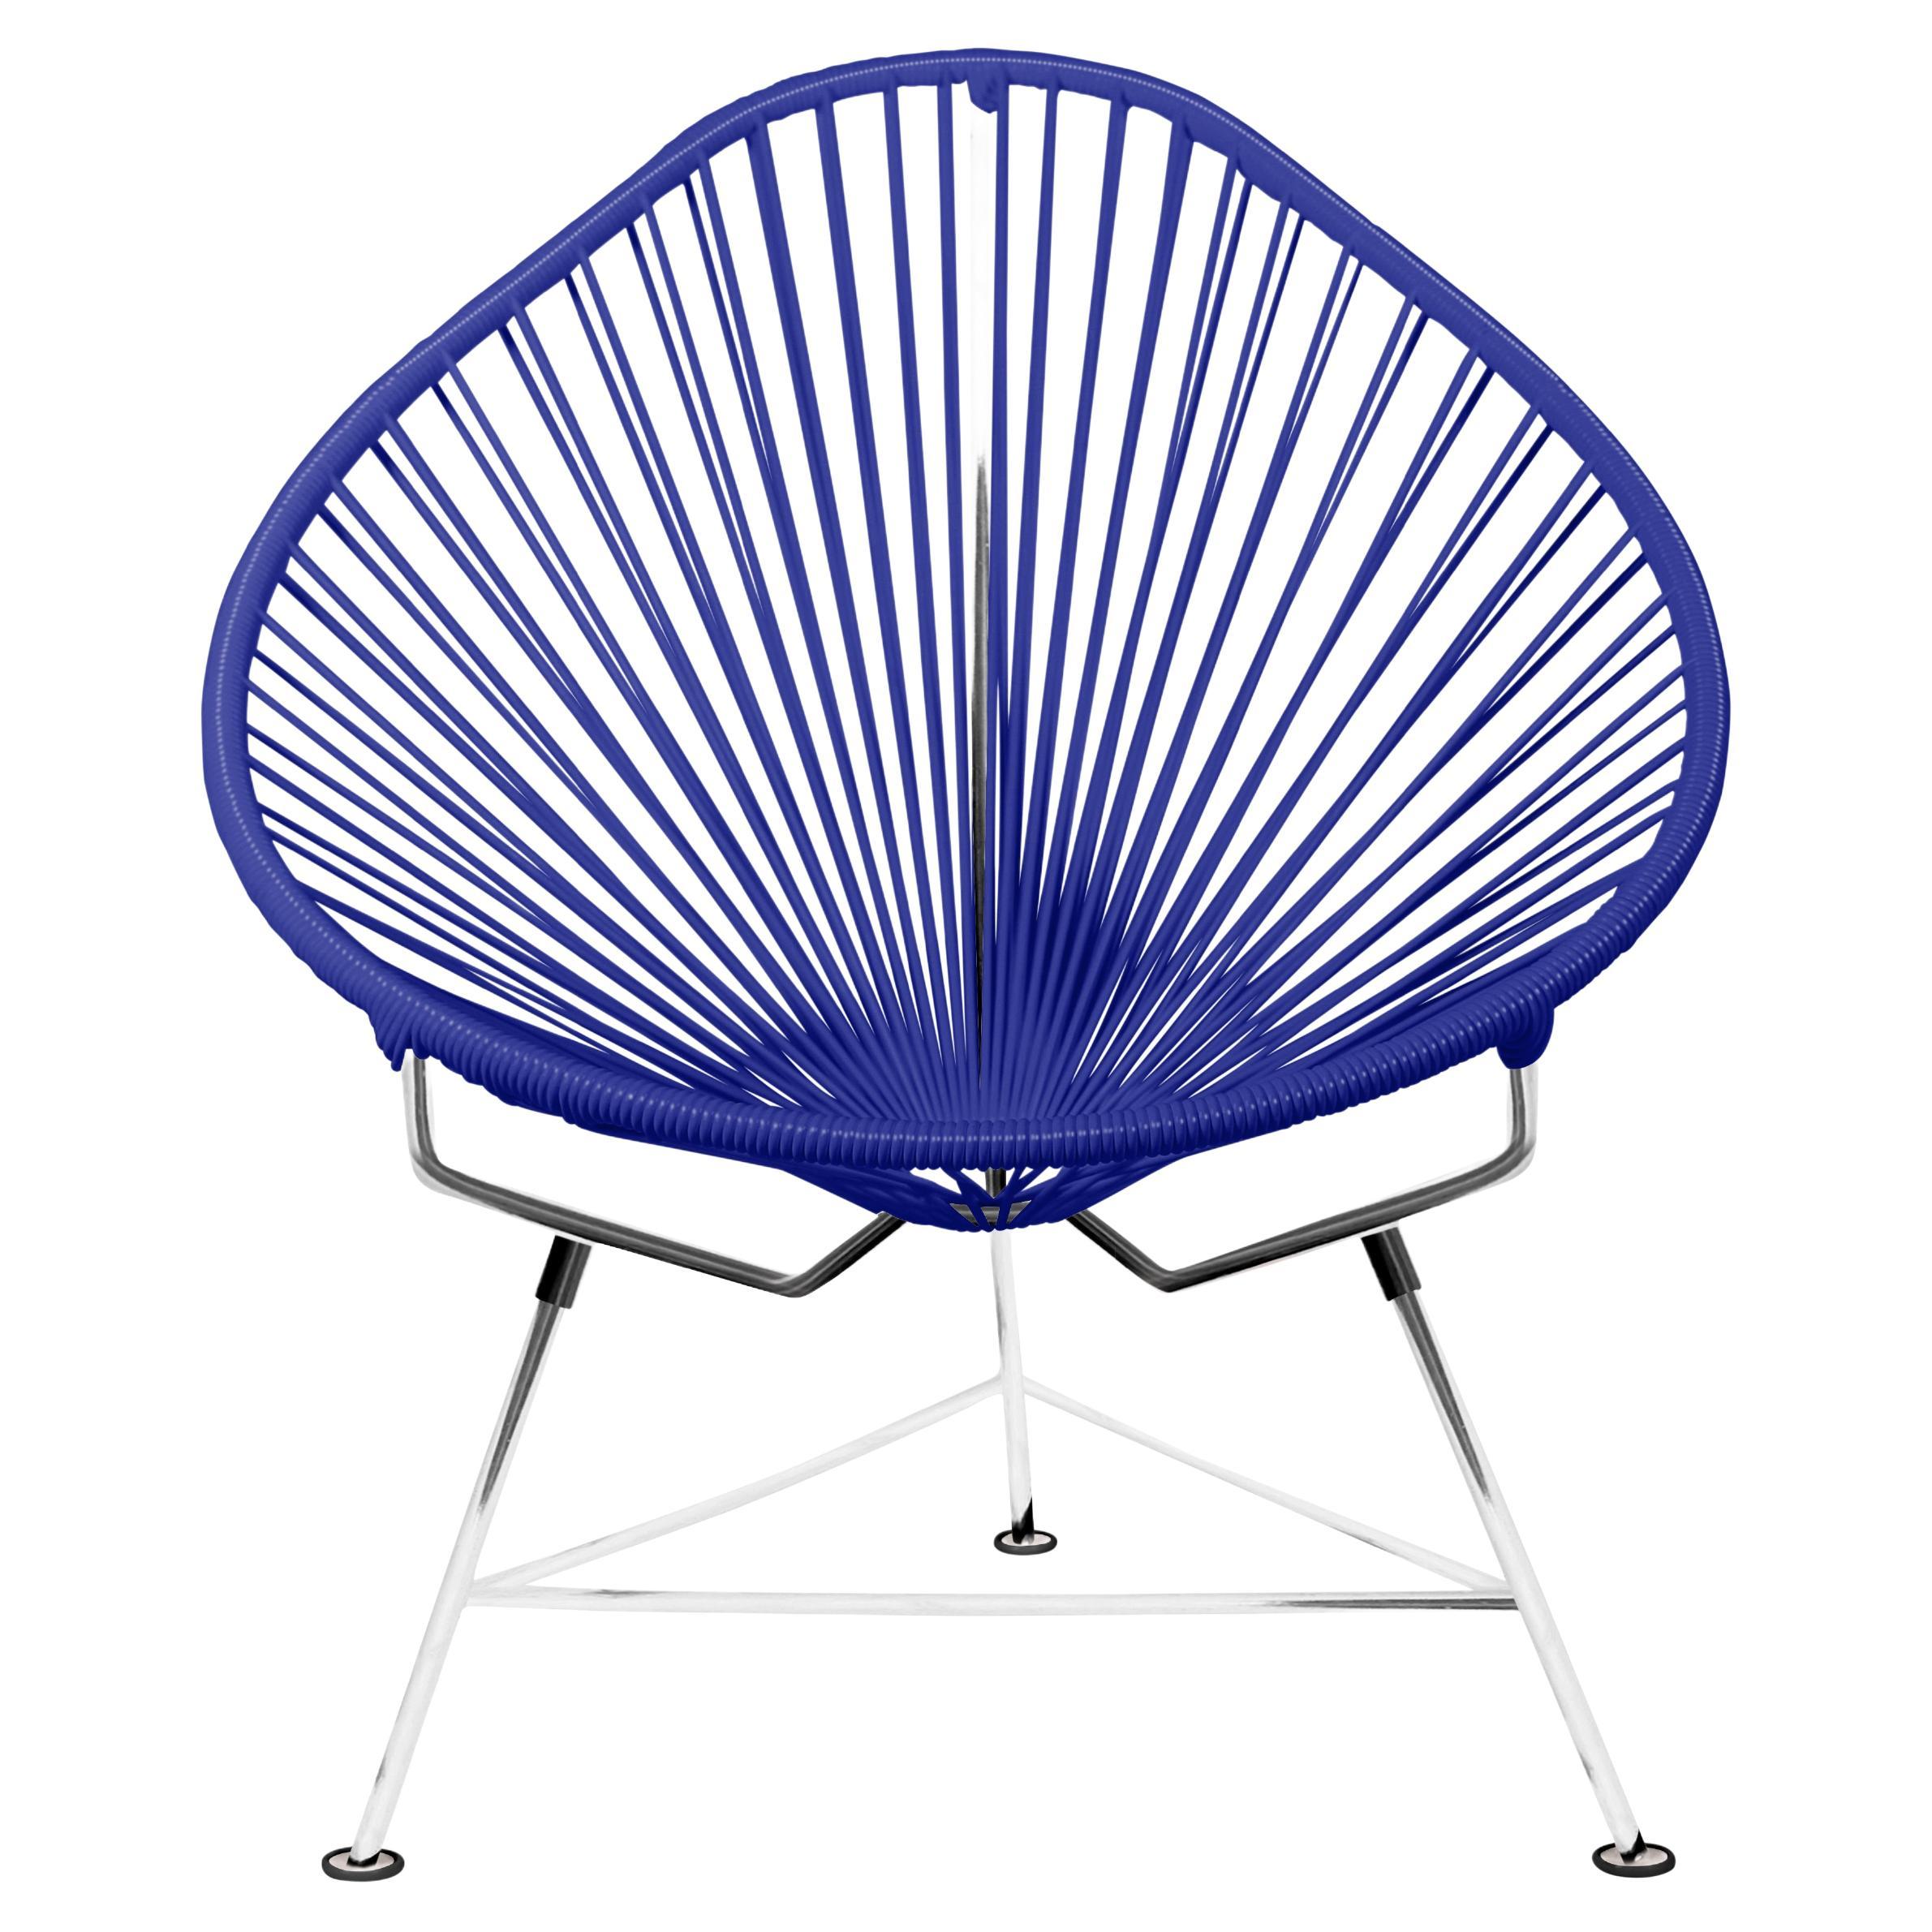 Innit Designs chaise Acapulco tissée en bleu profond sur cadre chromé